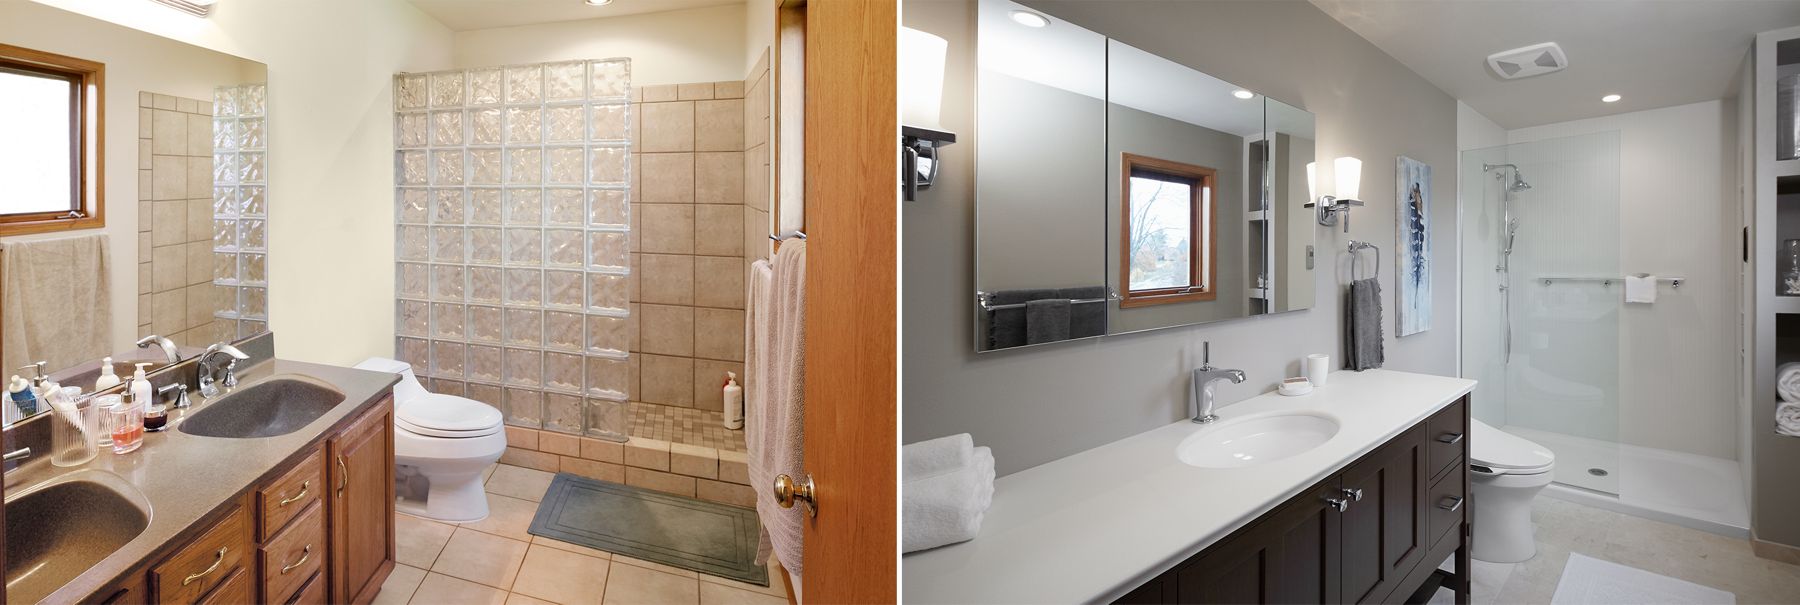 Floor Plan Options Bathroom Ideas Planning Bathroom Kohler